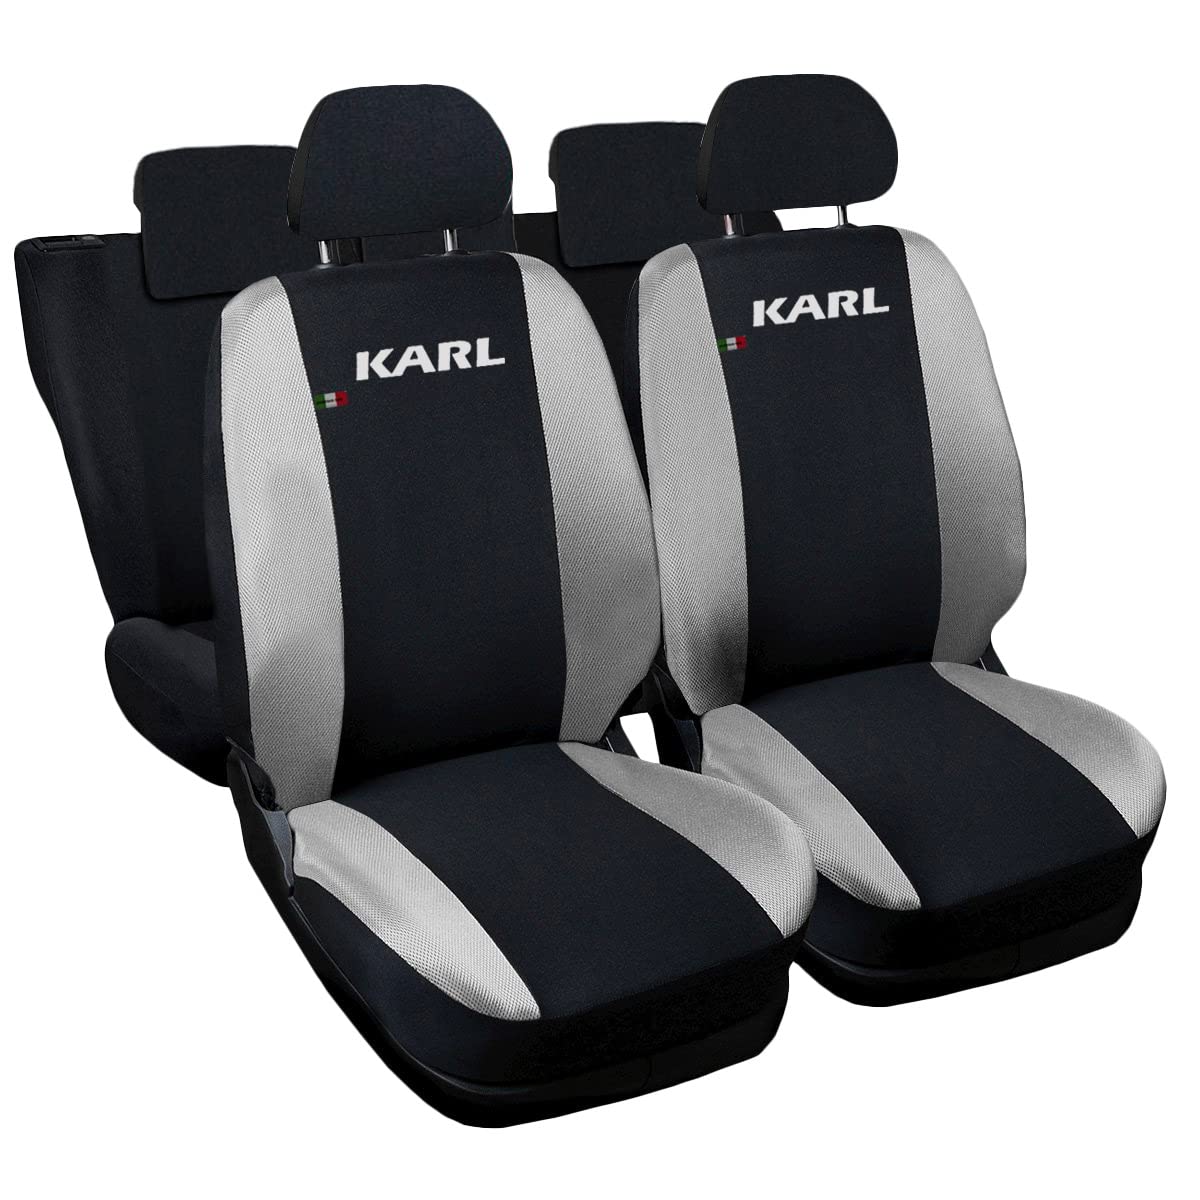 Lupex Shop Autositzbezüge kompatibel mit Karl, Made in Italy, Polyestergewebe, kompletter Satz Vorder- und Rücksitze (Schwarz - Hellgrau) von Lupex Shop